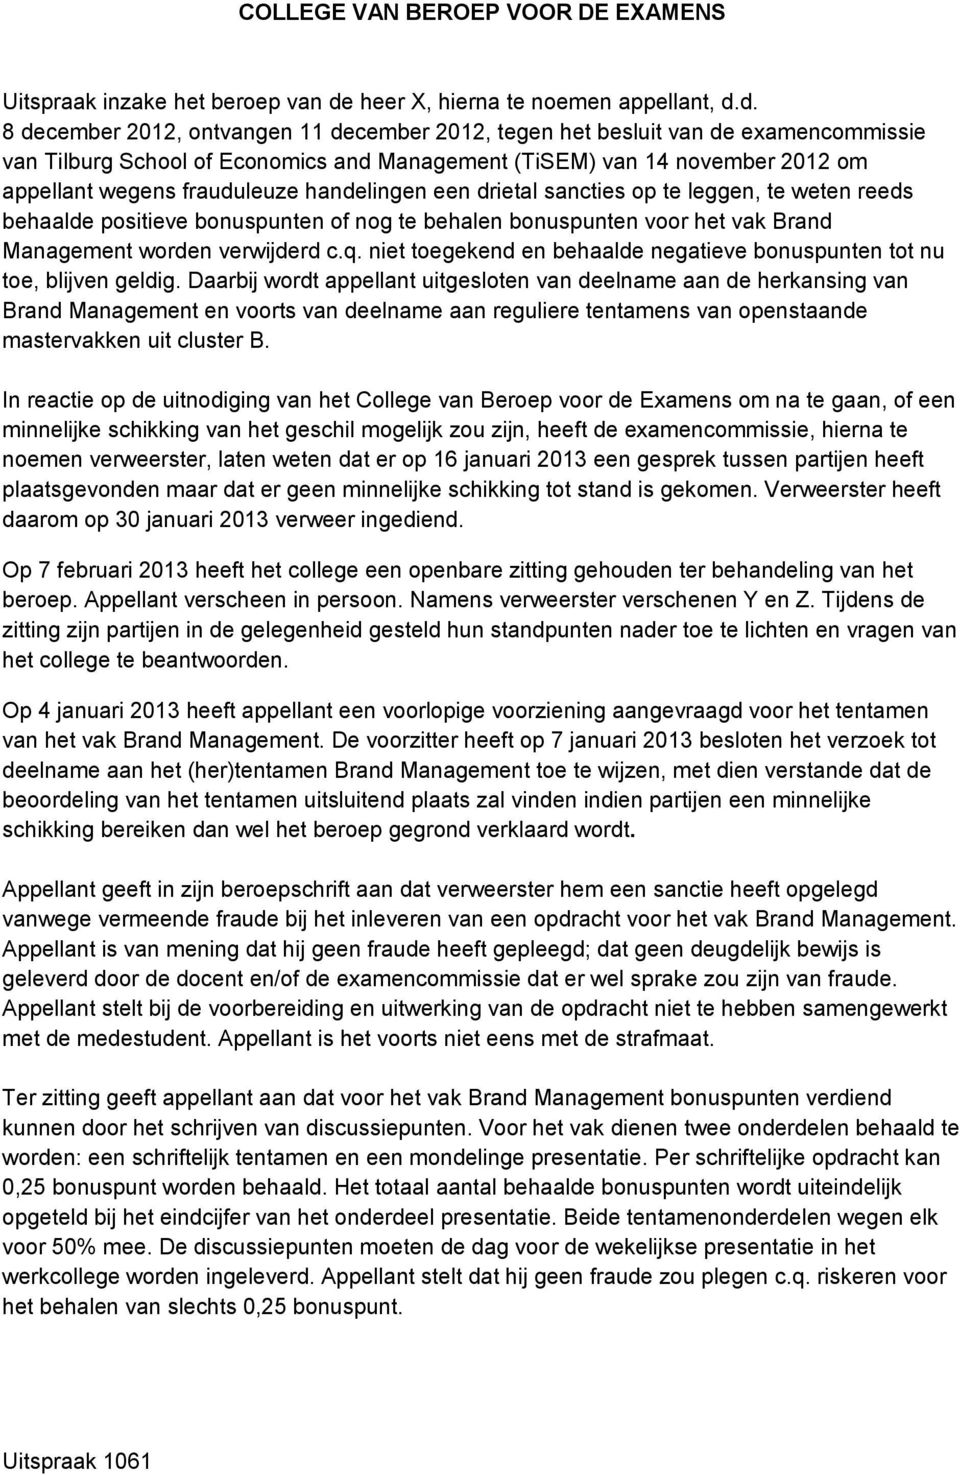 d. 8 december 2012, ontvangen 11 december 2012, tegen het besluit van de examencommissie van Tilburg School of Economics and Management (TiSEM) van 14 november 2012 om appellant wegens frauduleuze